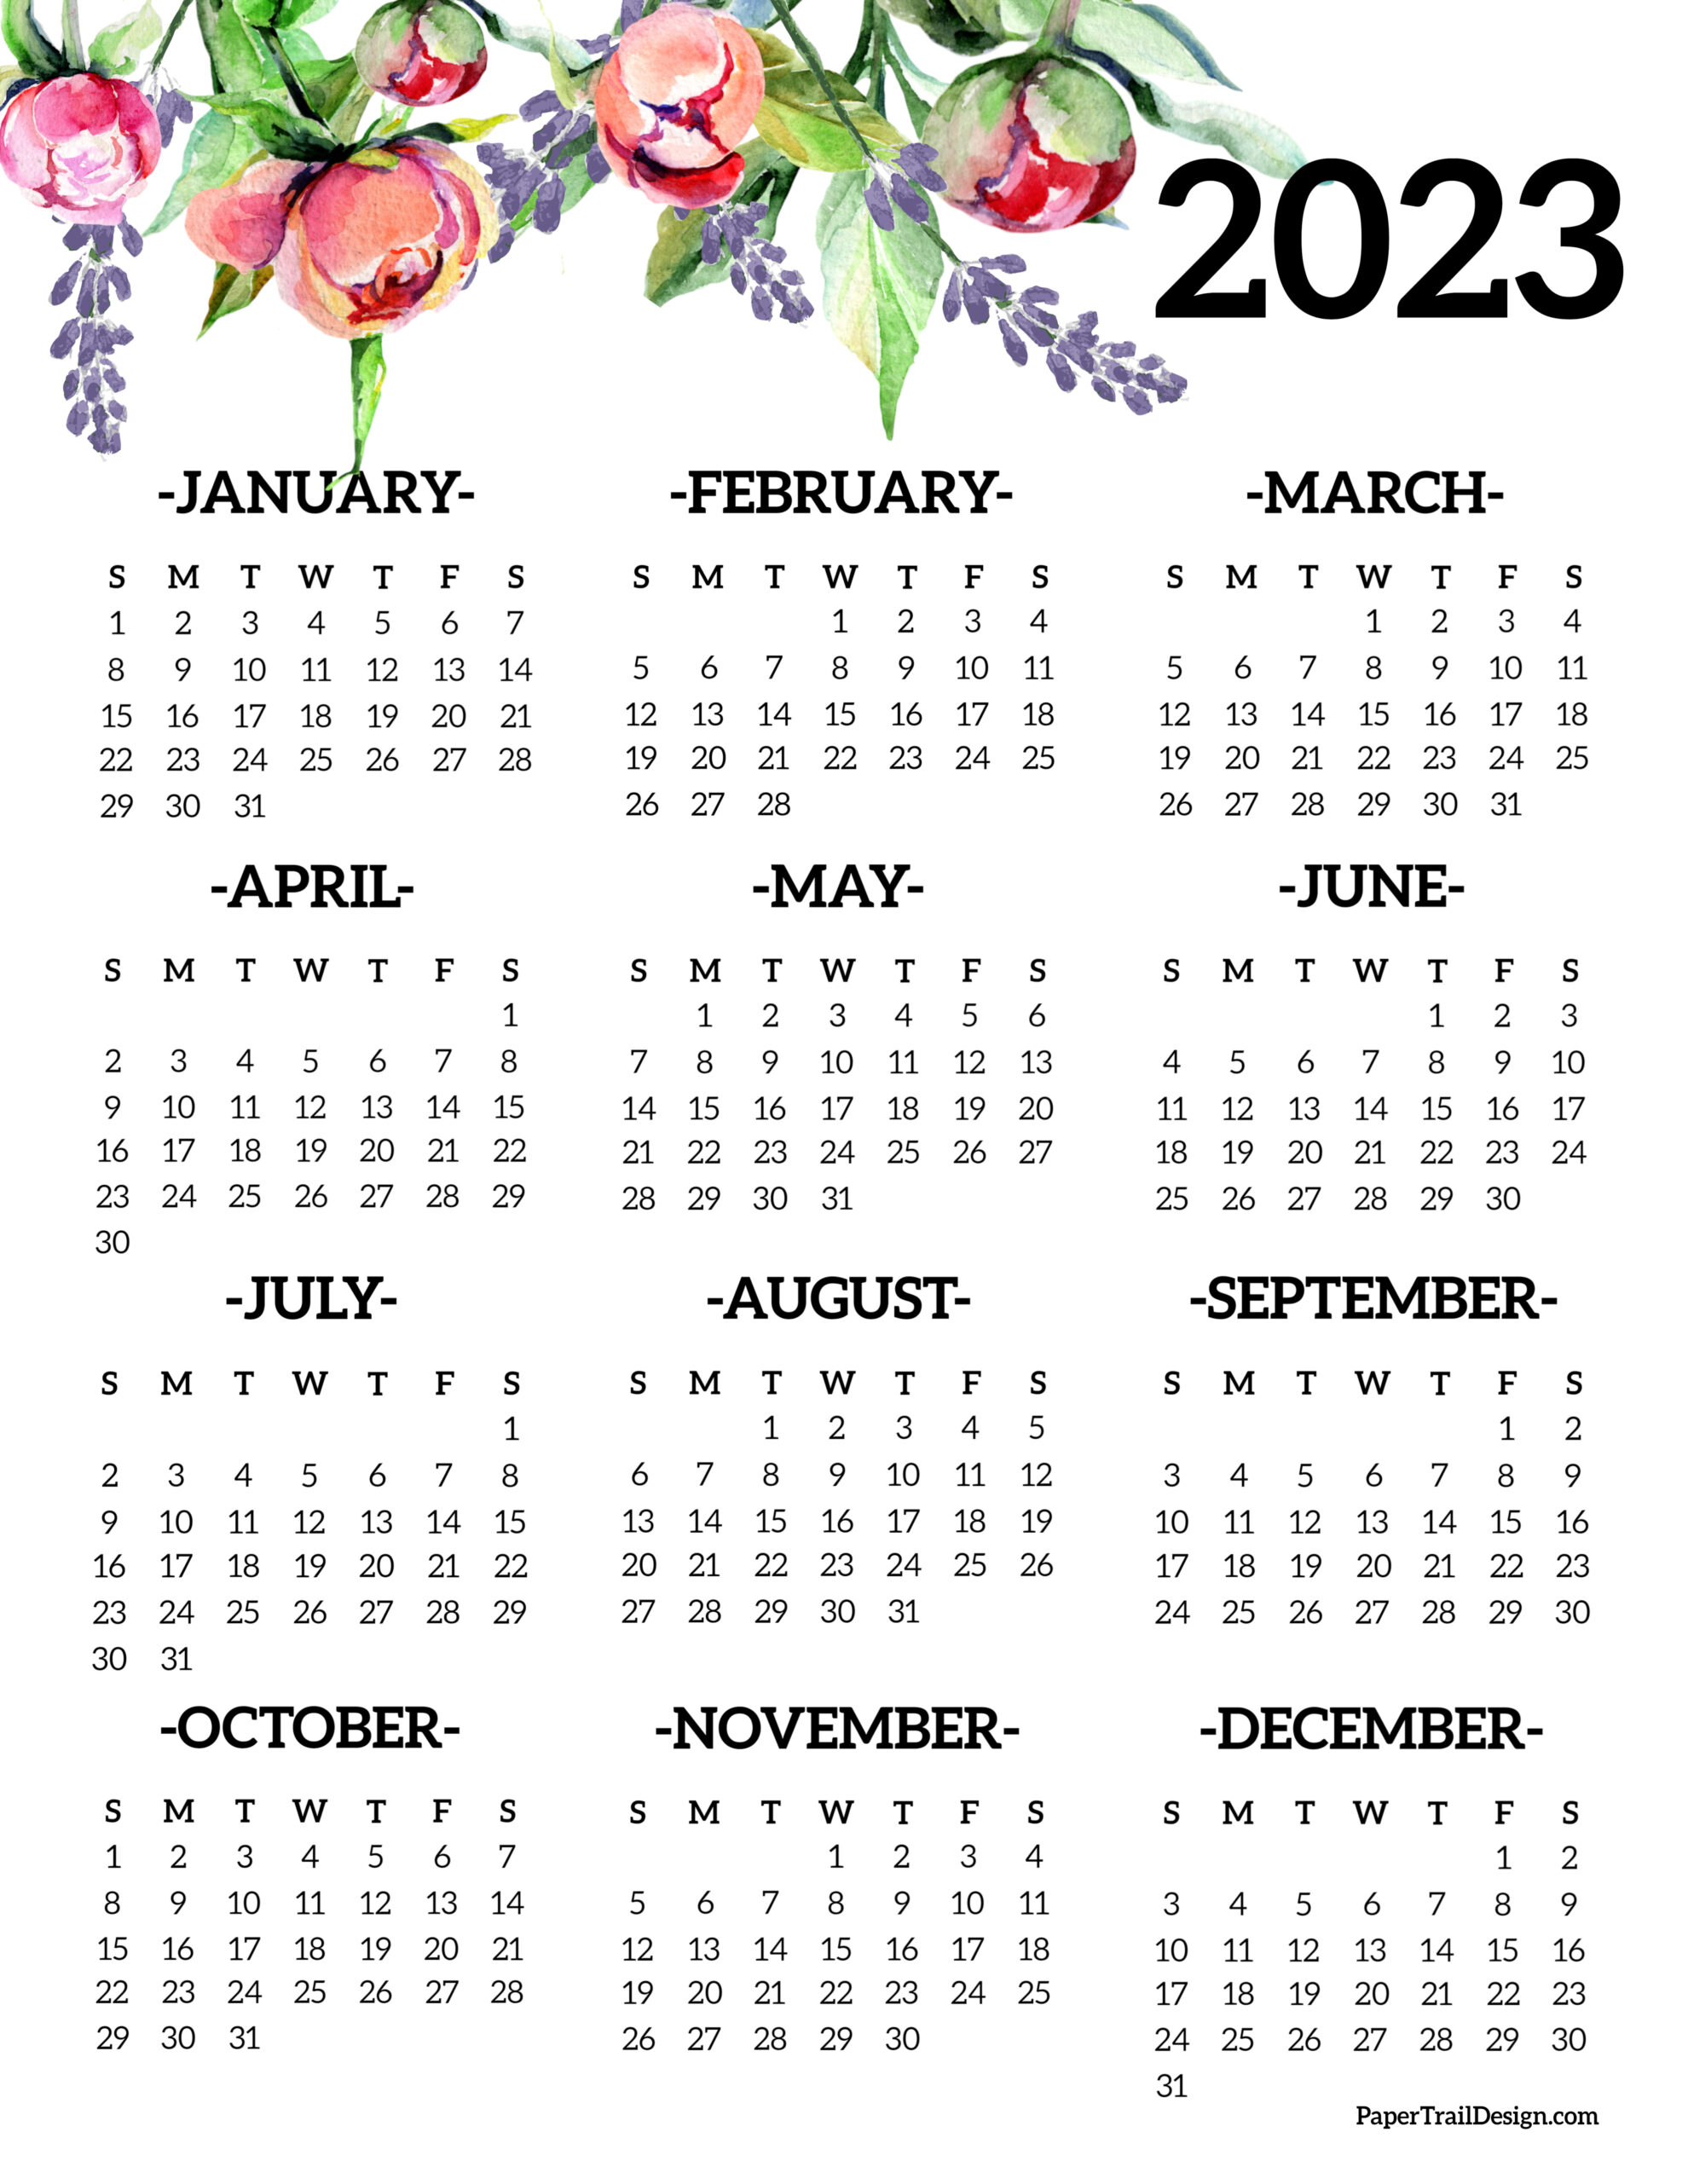 paper-trail-design-calendar-2023-get-calendar-2023-update